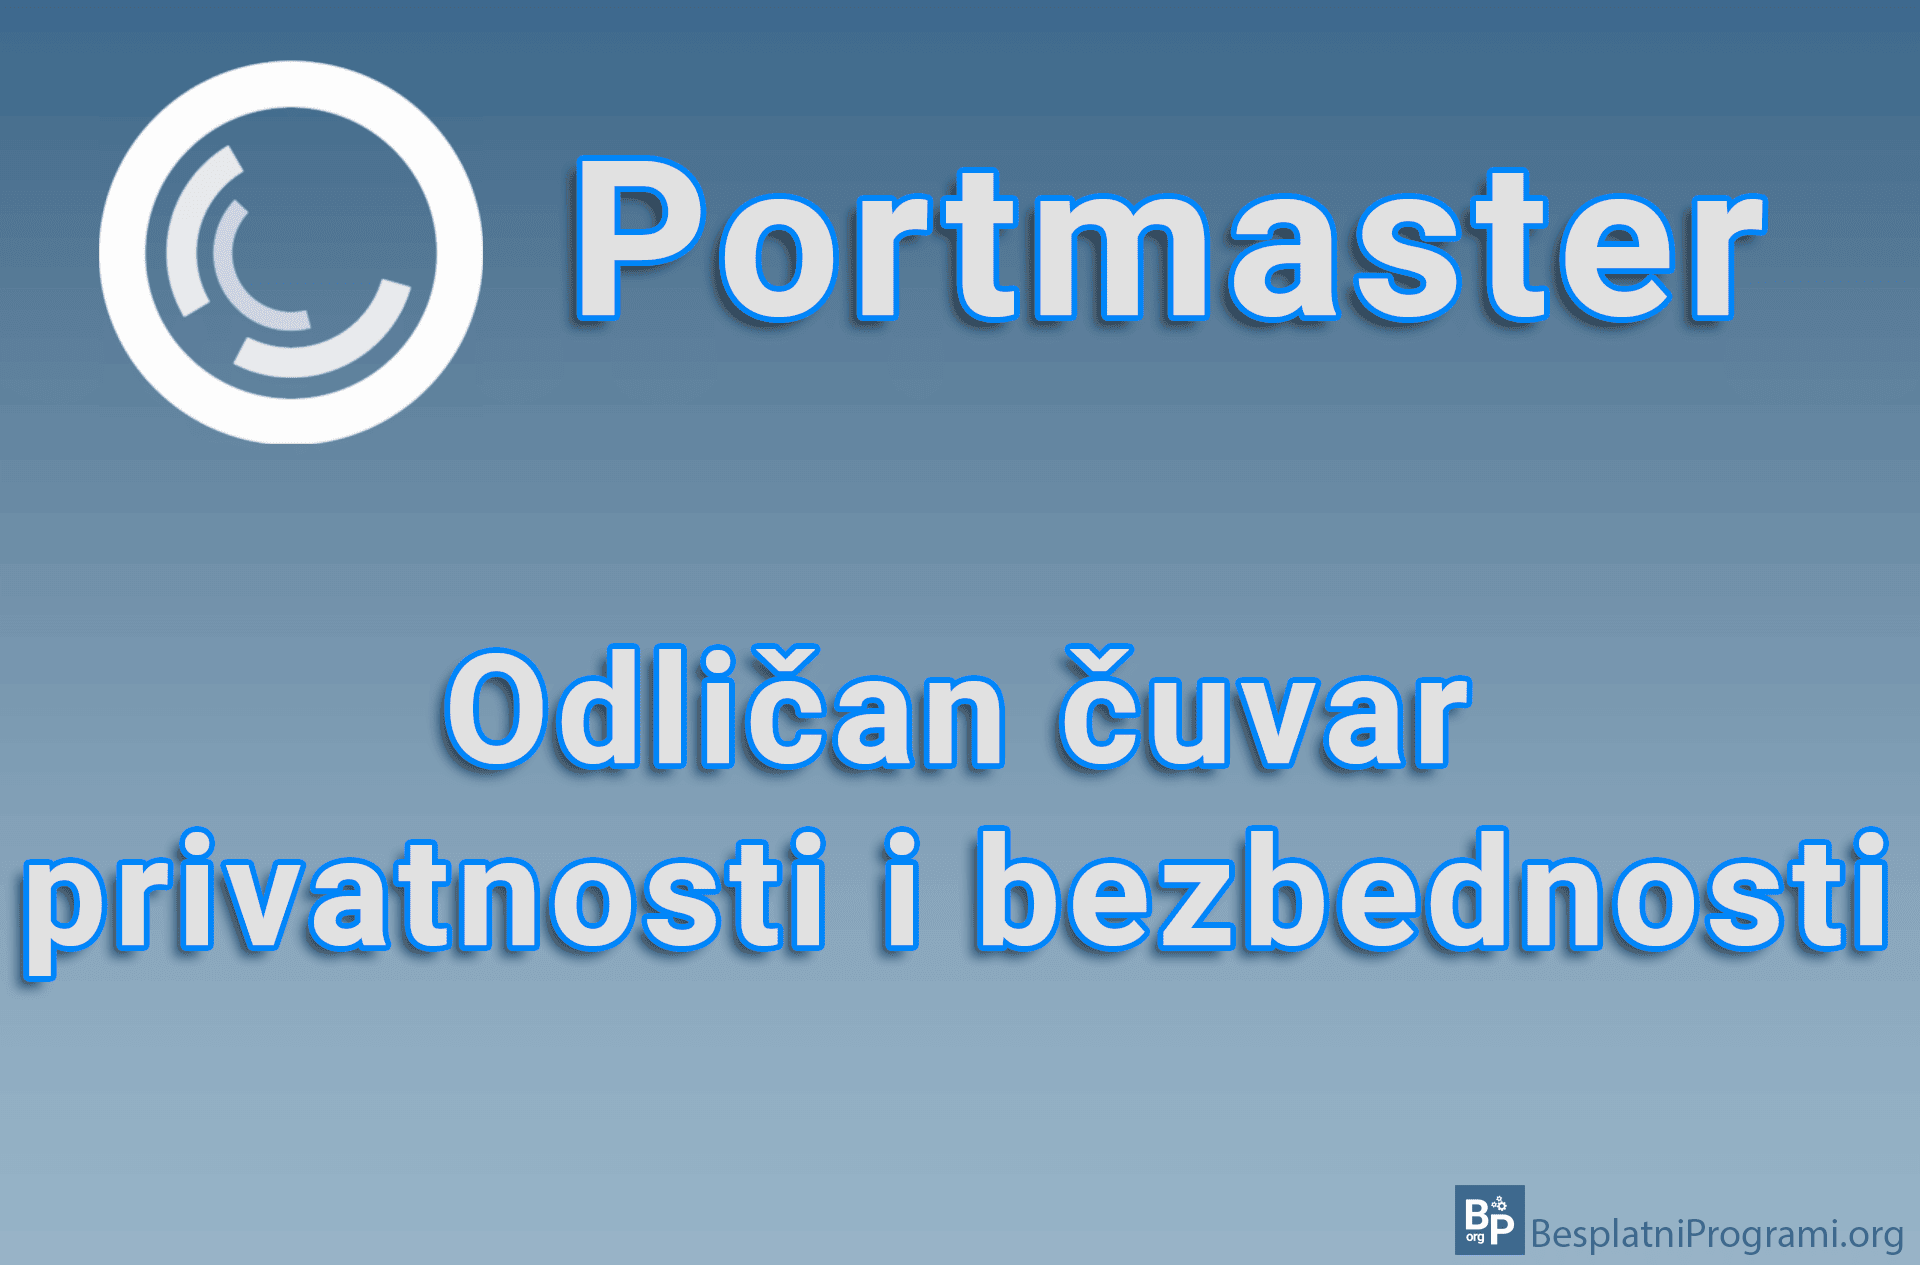 Portmaster – Odličan čuvar privatnosti i bezbednosti